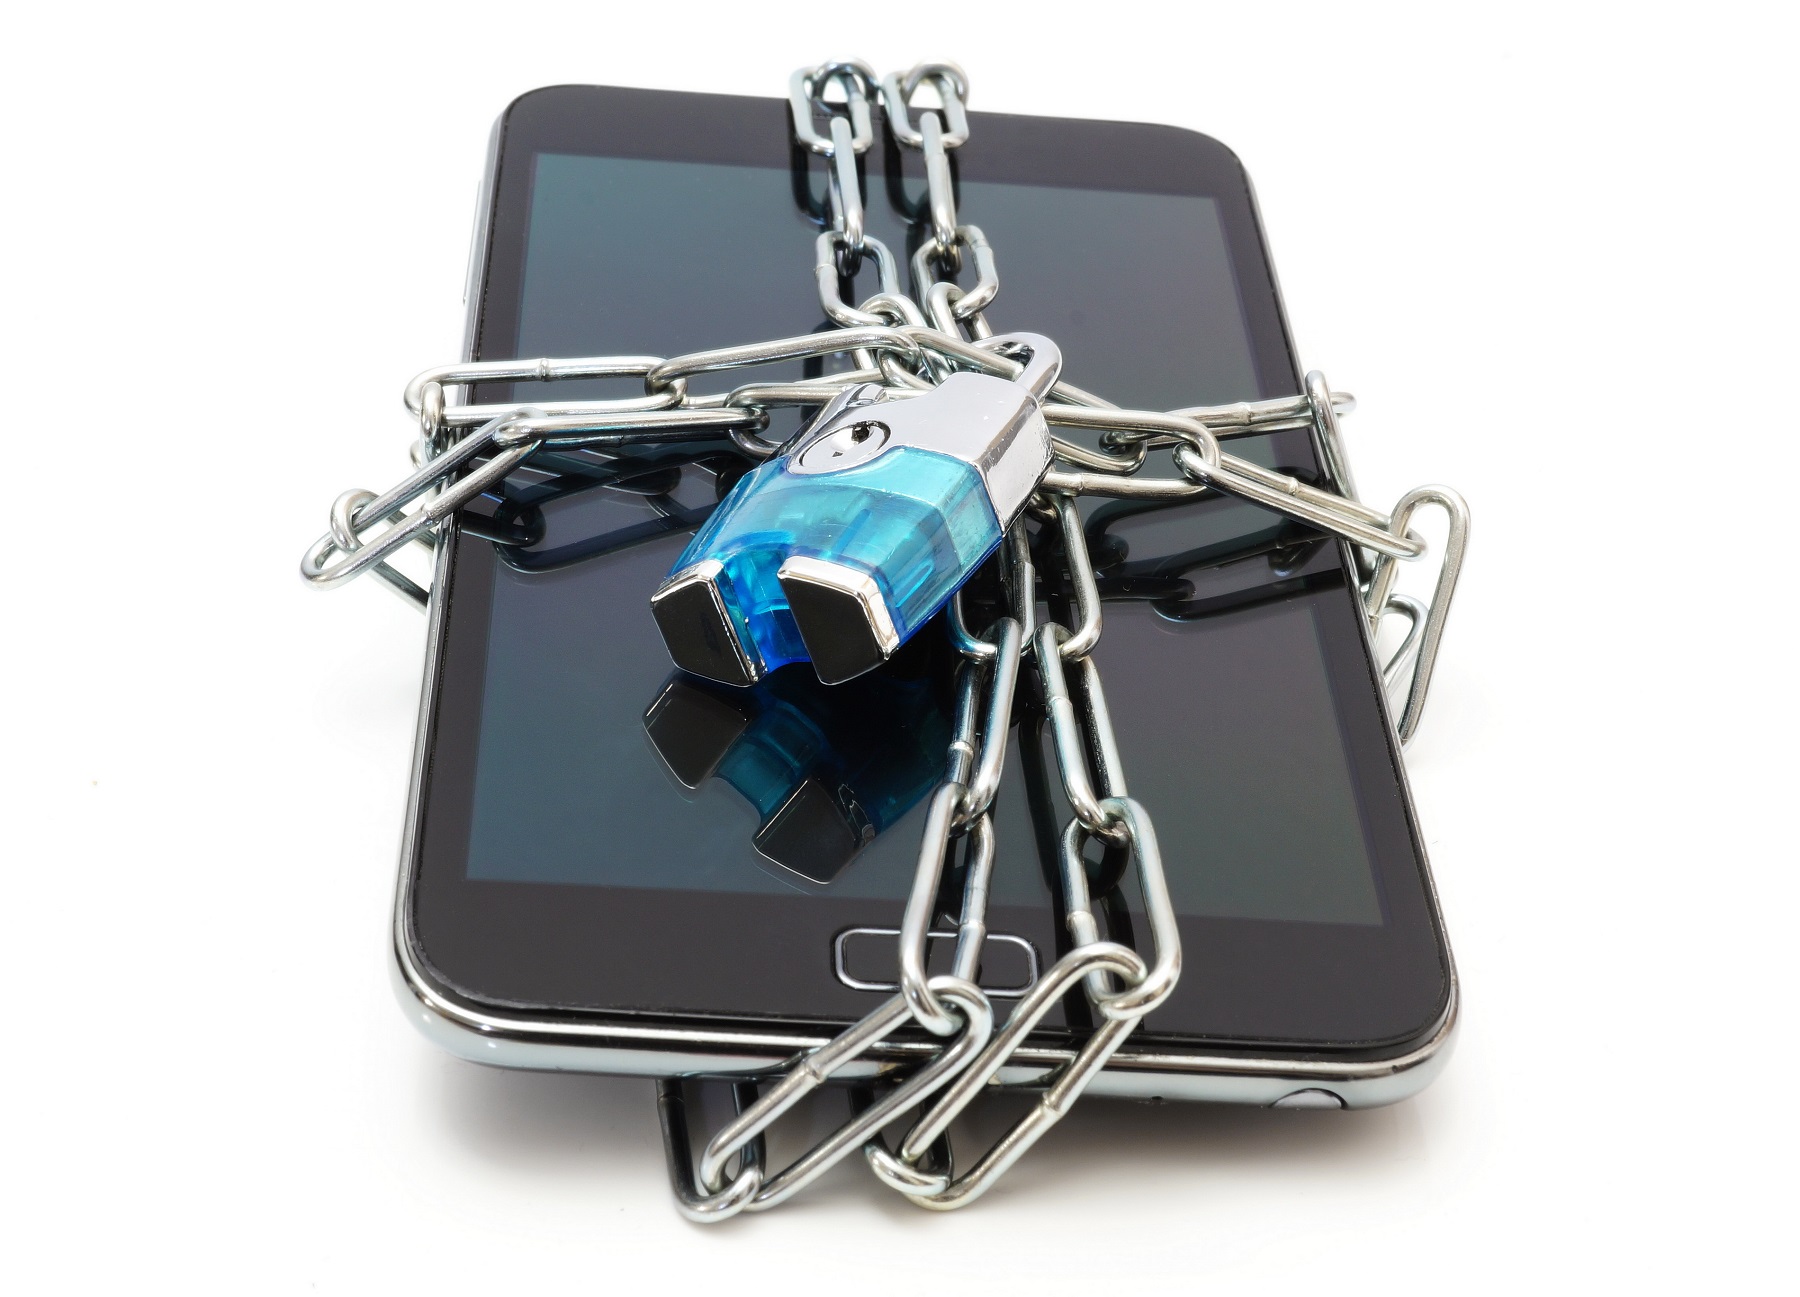 iPhone : logiciel espion pour pirater iOS et impossible de l’éviter